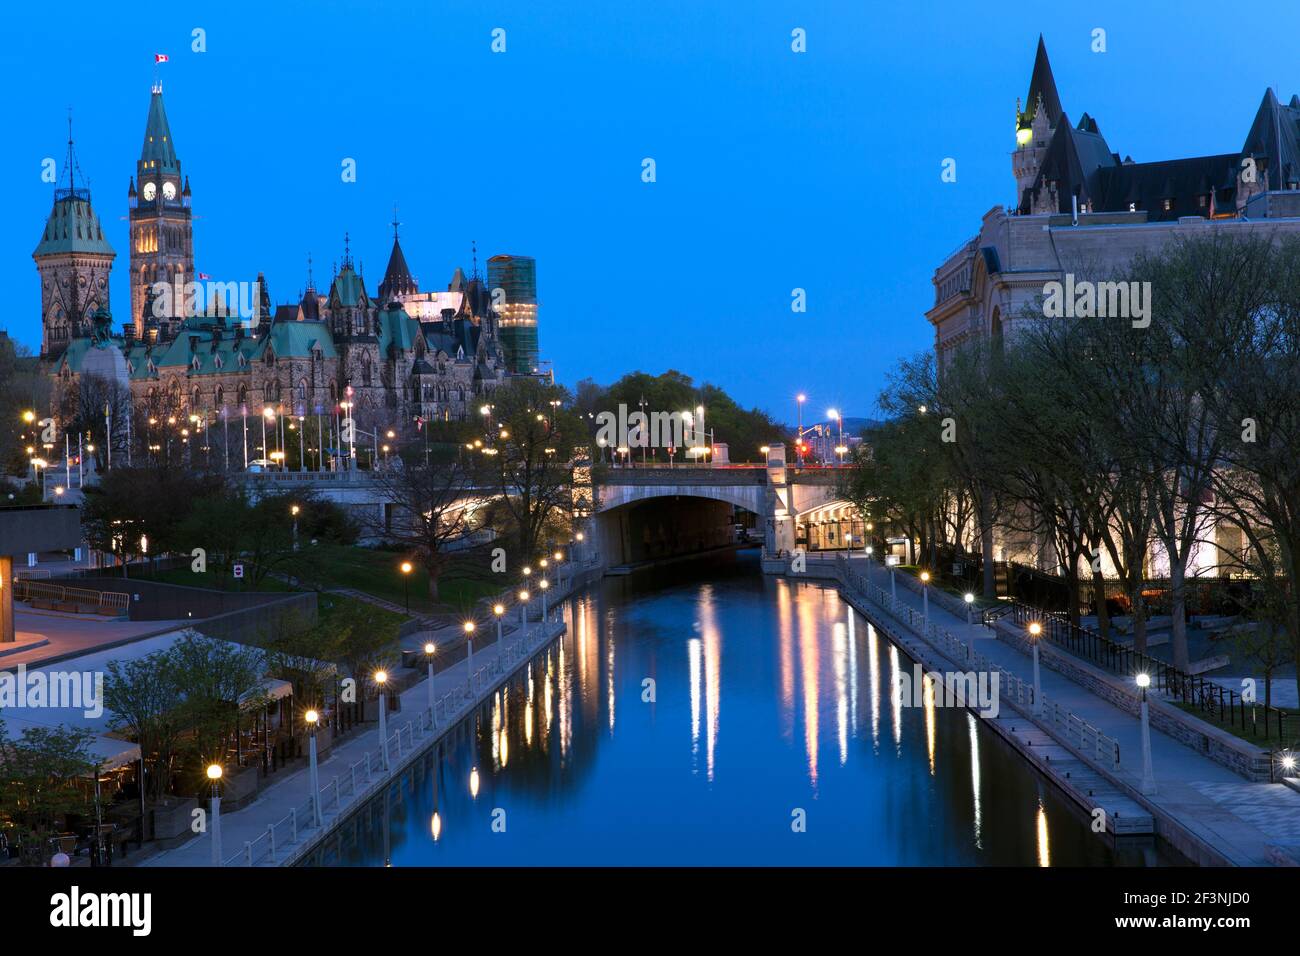 Canada, Ontario, Ottawa, Ottawa Convention Center, Shaw Center con Rideau Canal, il Parlamento edifici e l'hotel Chateau Laurier Foto Stock